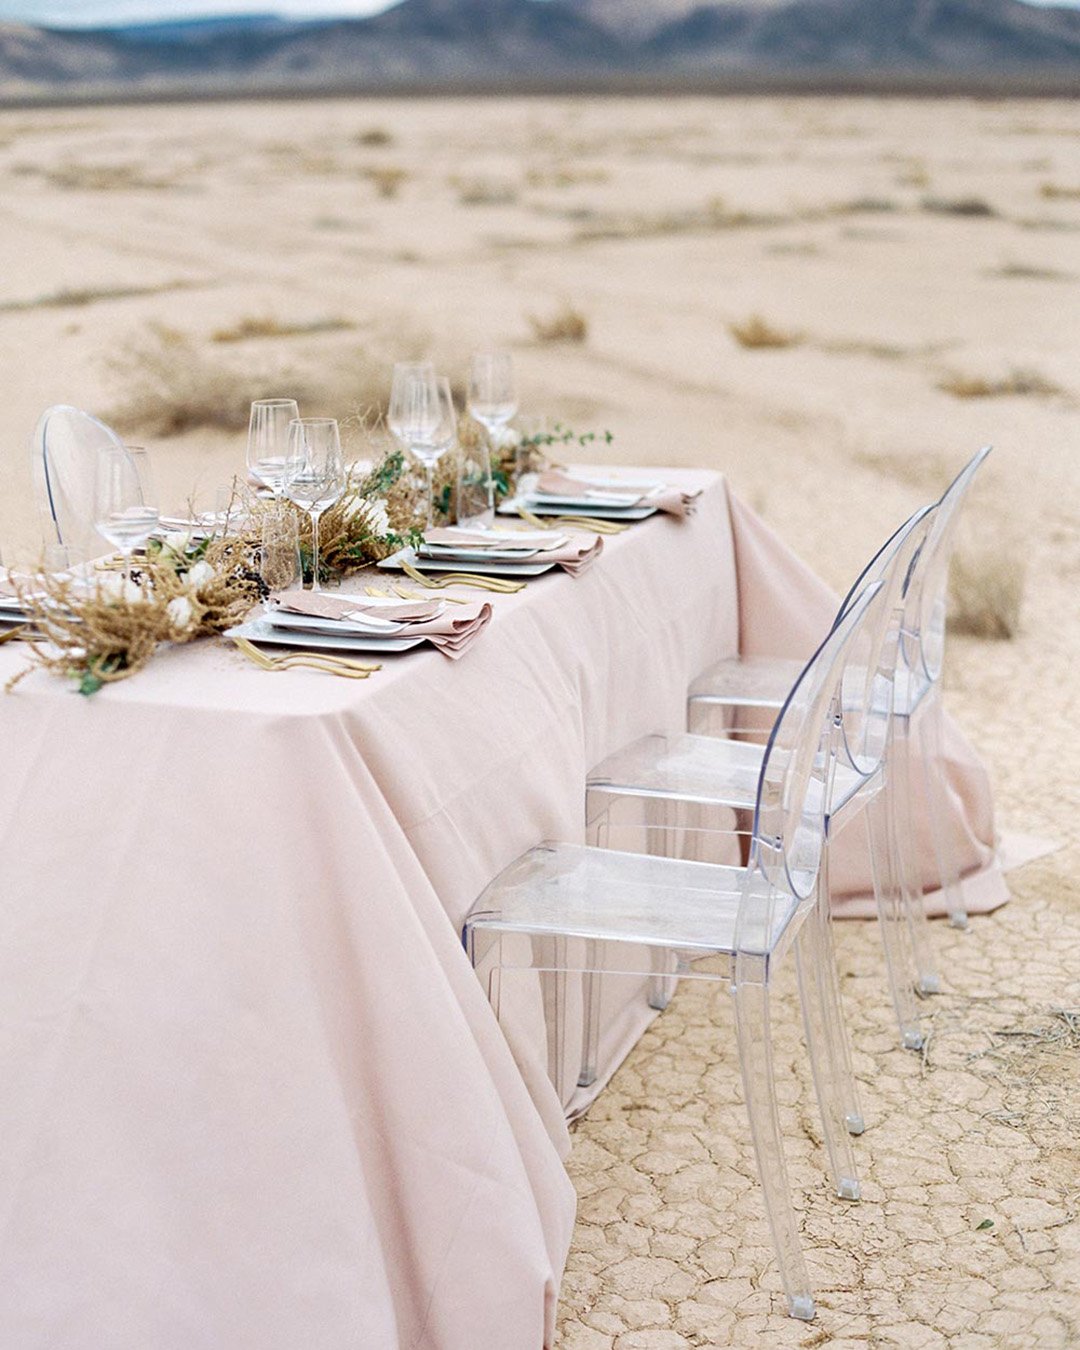 micro wedding venues glam reception in desert draper gray